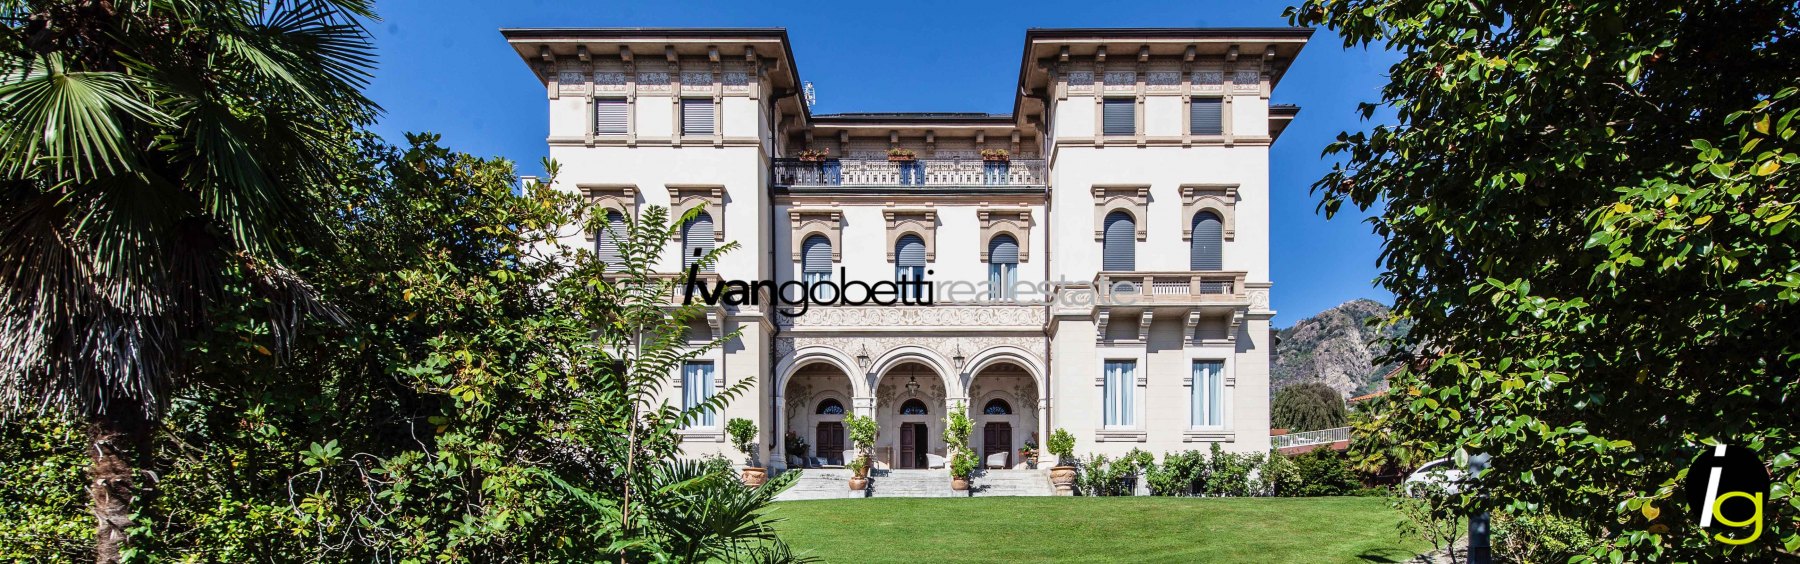 Historische Luxusvilla am Lago Maggiore zu verkaufen – Villa Gavazzeni<br/><span>Produktcode: 110877